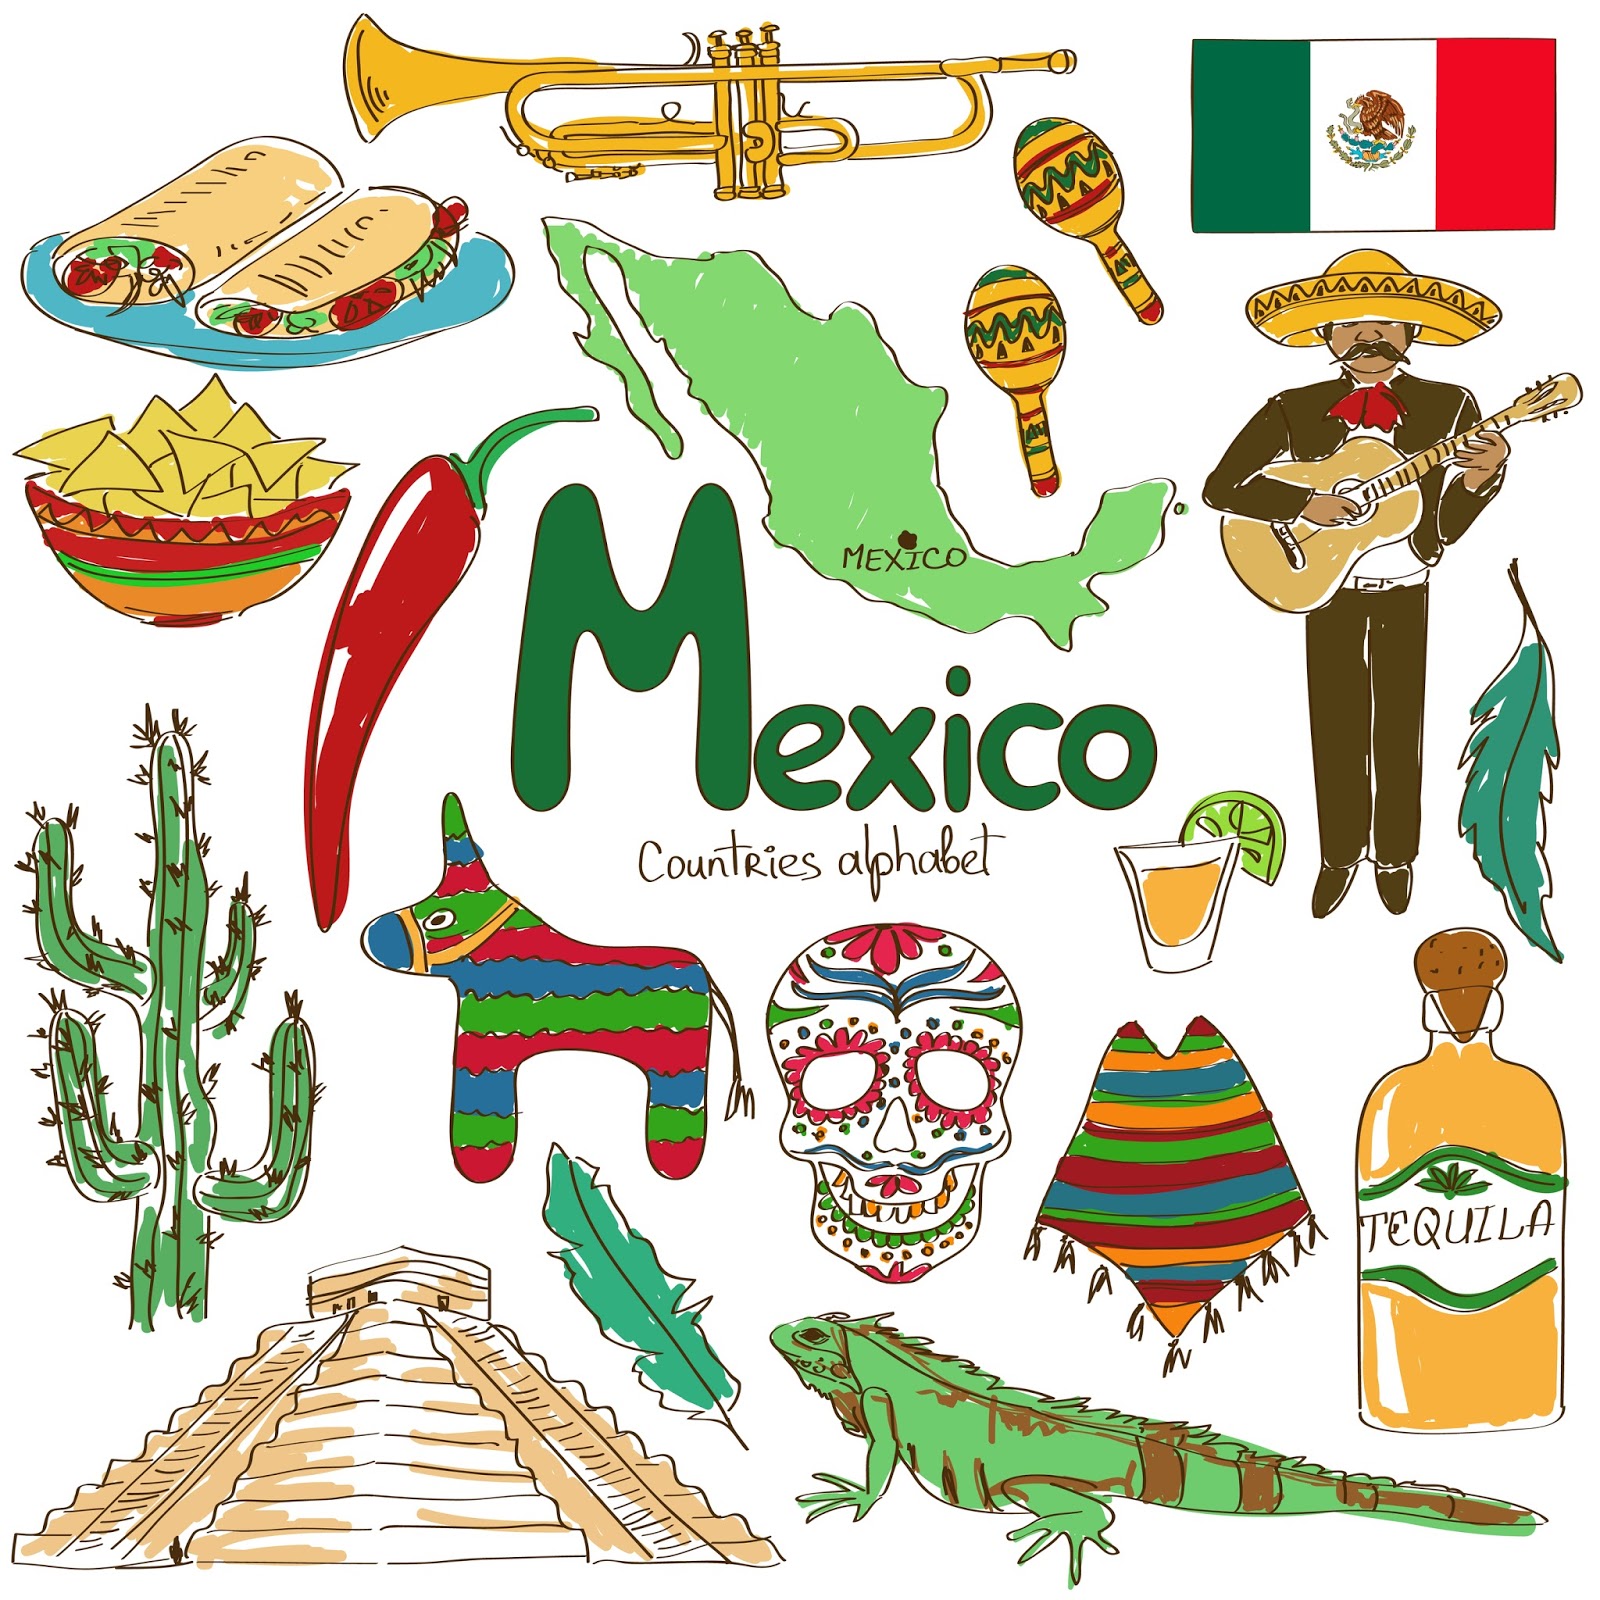 Banco de Imágenes Gratis: 50 imágenes de los Símbolos Patrios de México -  Día de la Independencia - 16 de Septiembre - ¡Viva México!